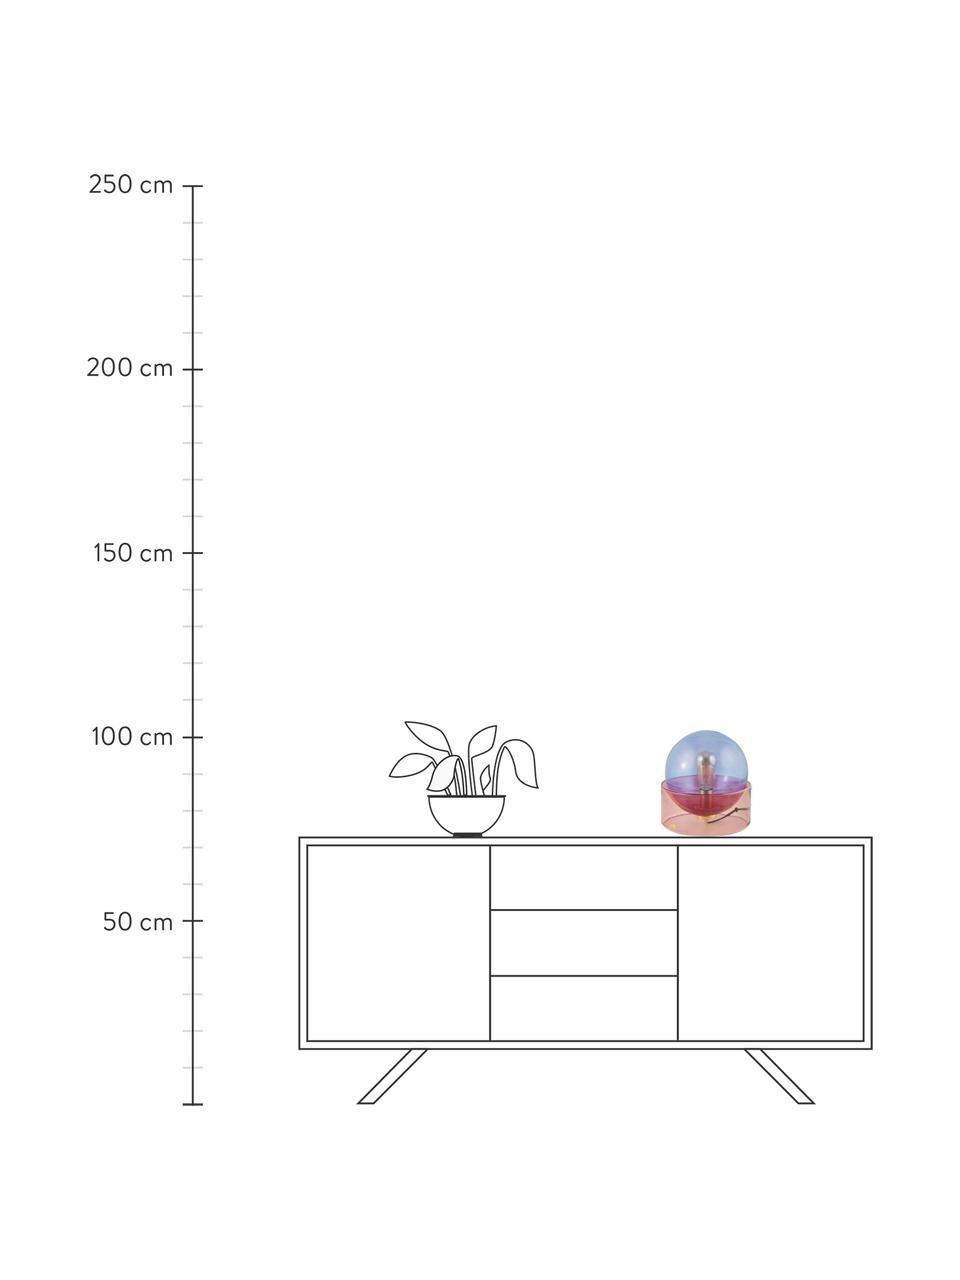 Lampada da tavolo in vetro colorato Glondy, Paralume: vetro, Base della lampada: vetro, Blu, rosa, Ø 27 x Alt. 29 cm